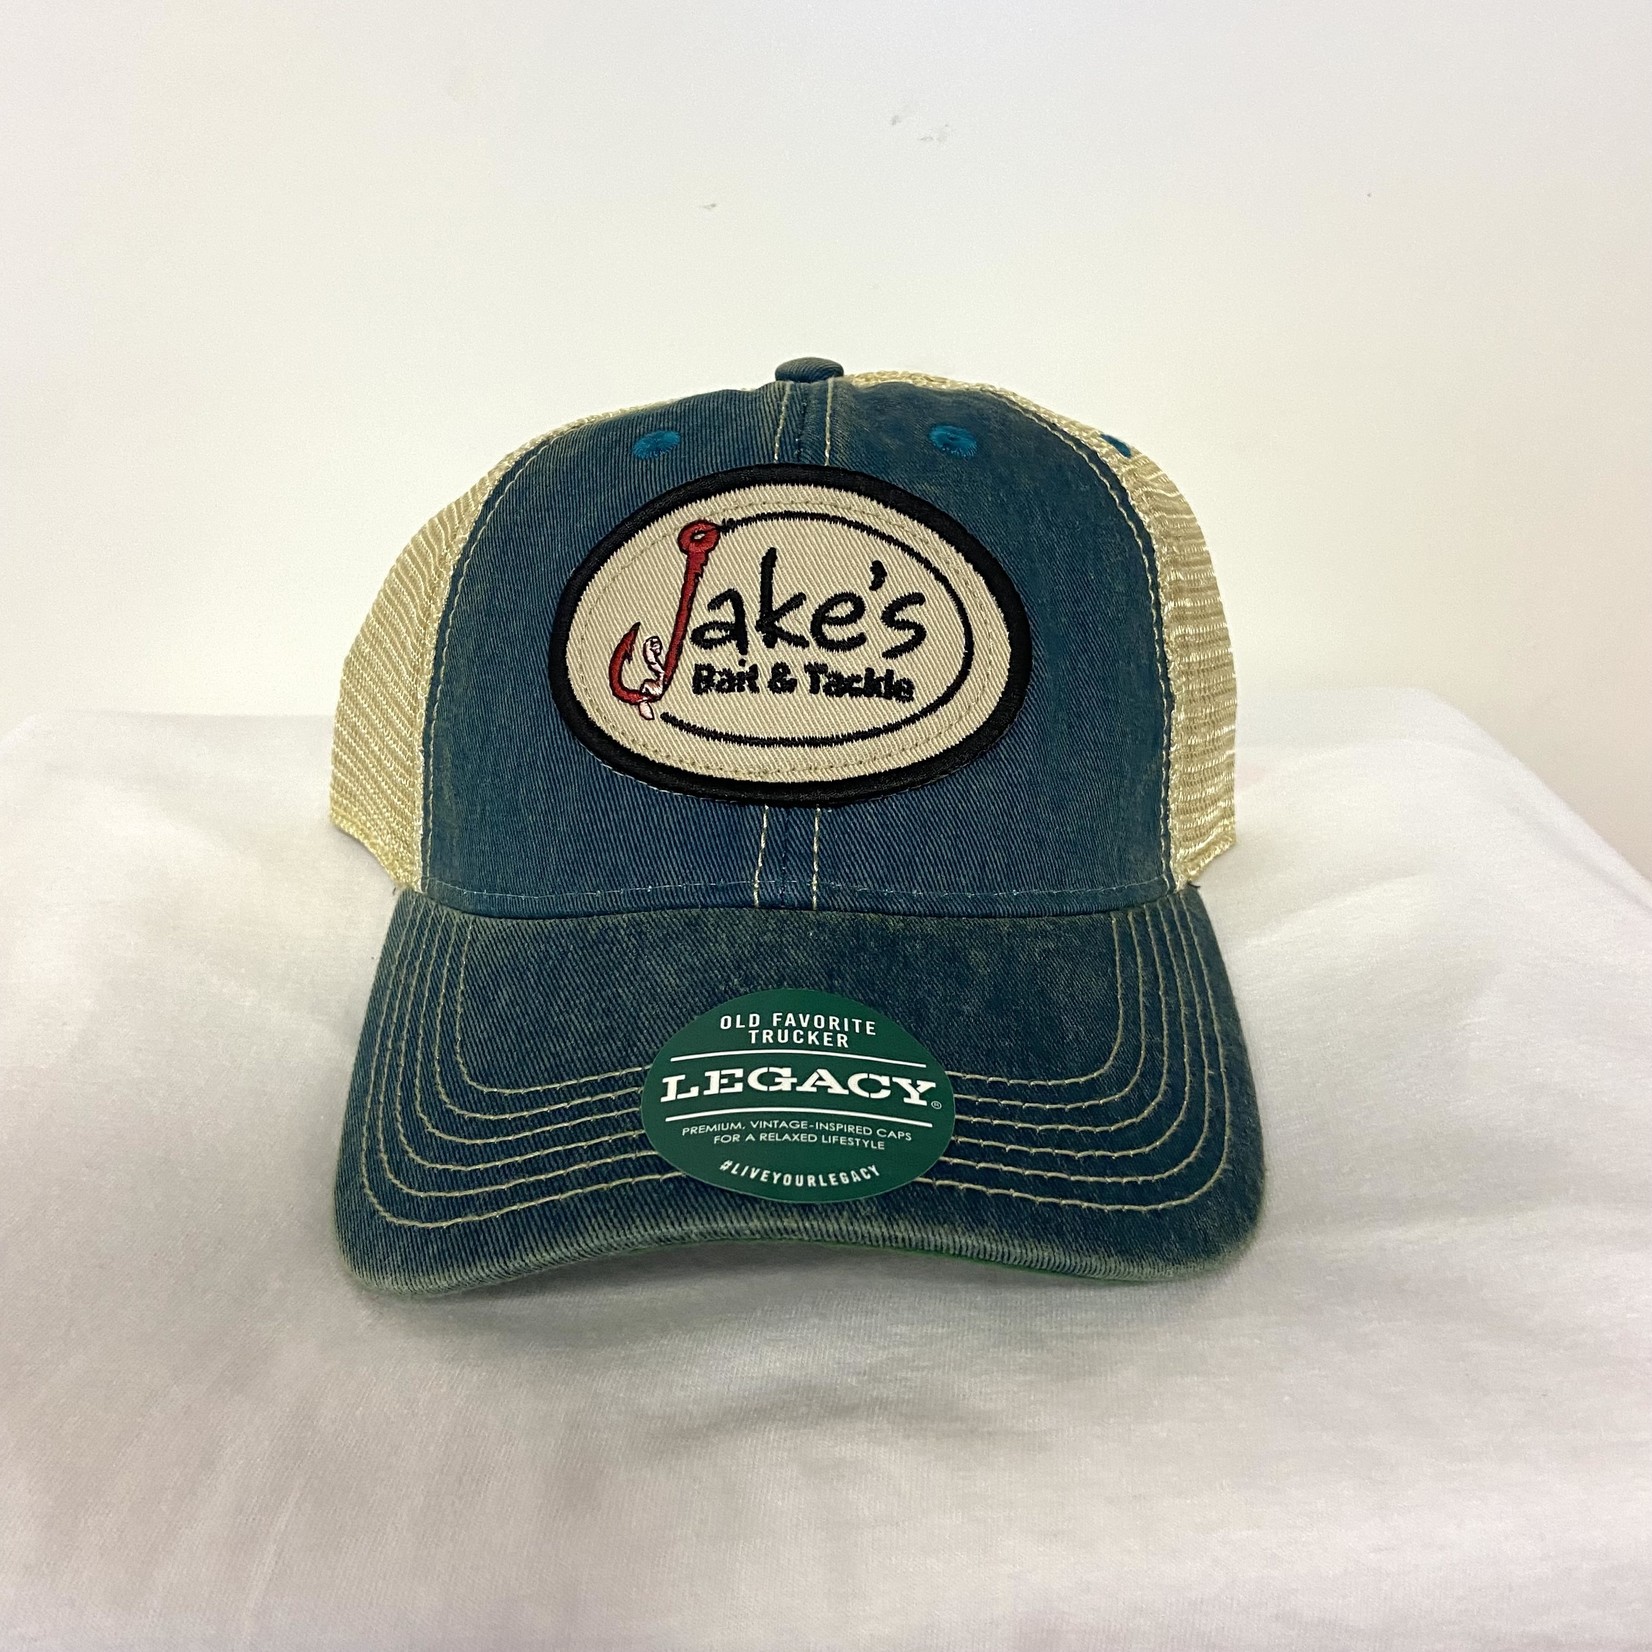 Jake's Bait Legacy Old Favorite Hat Trucker